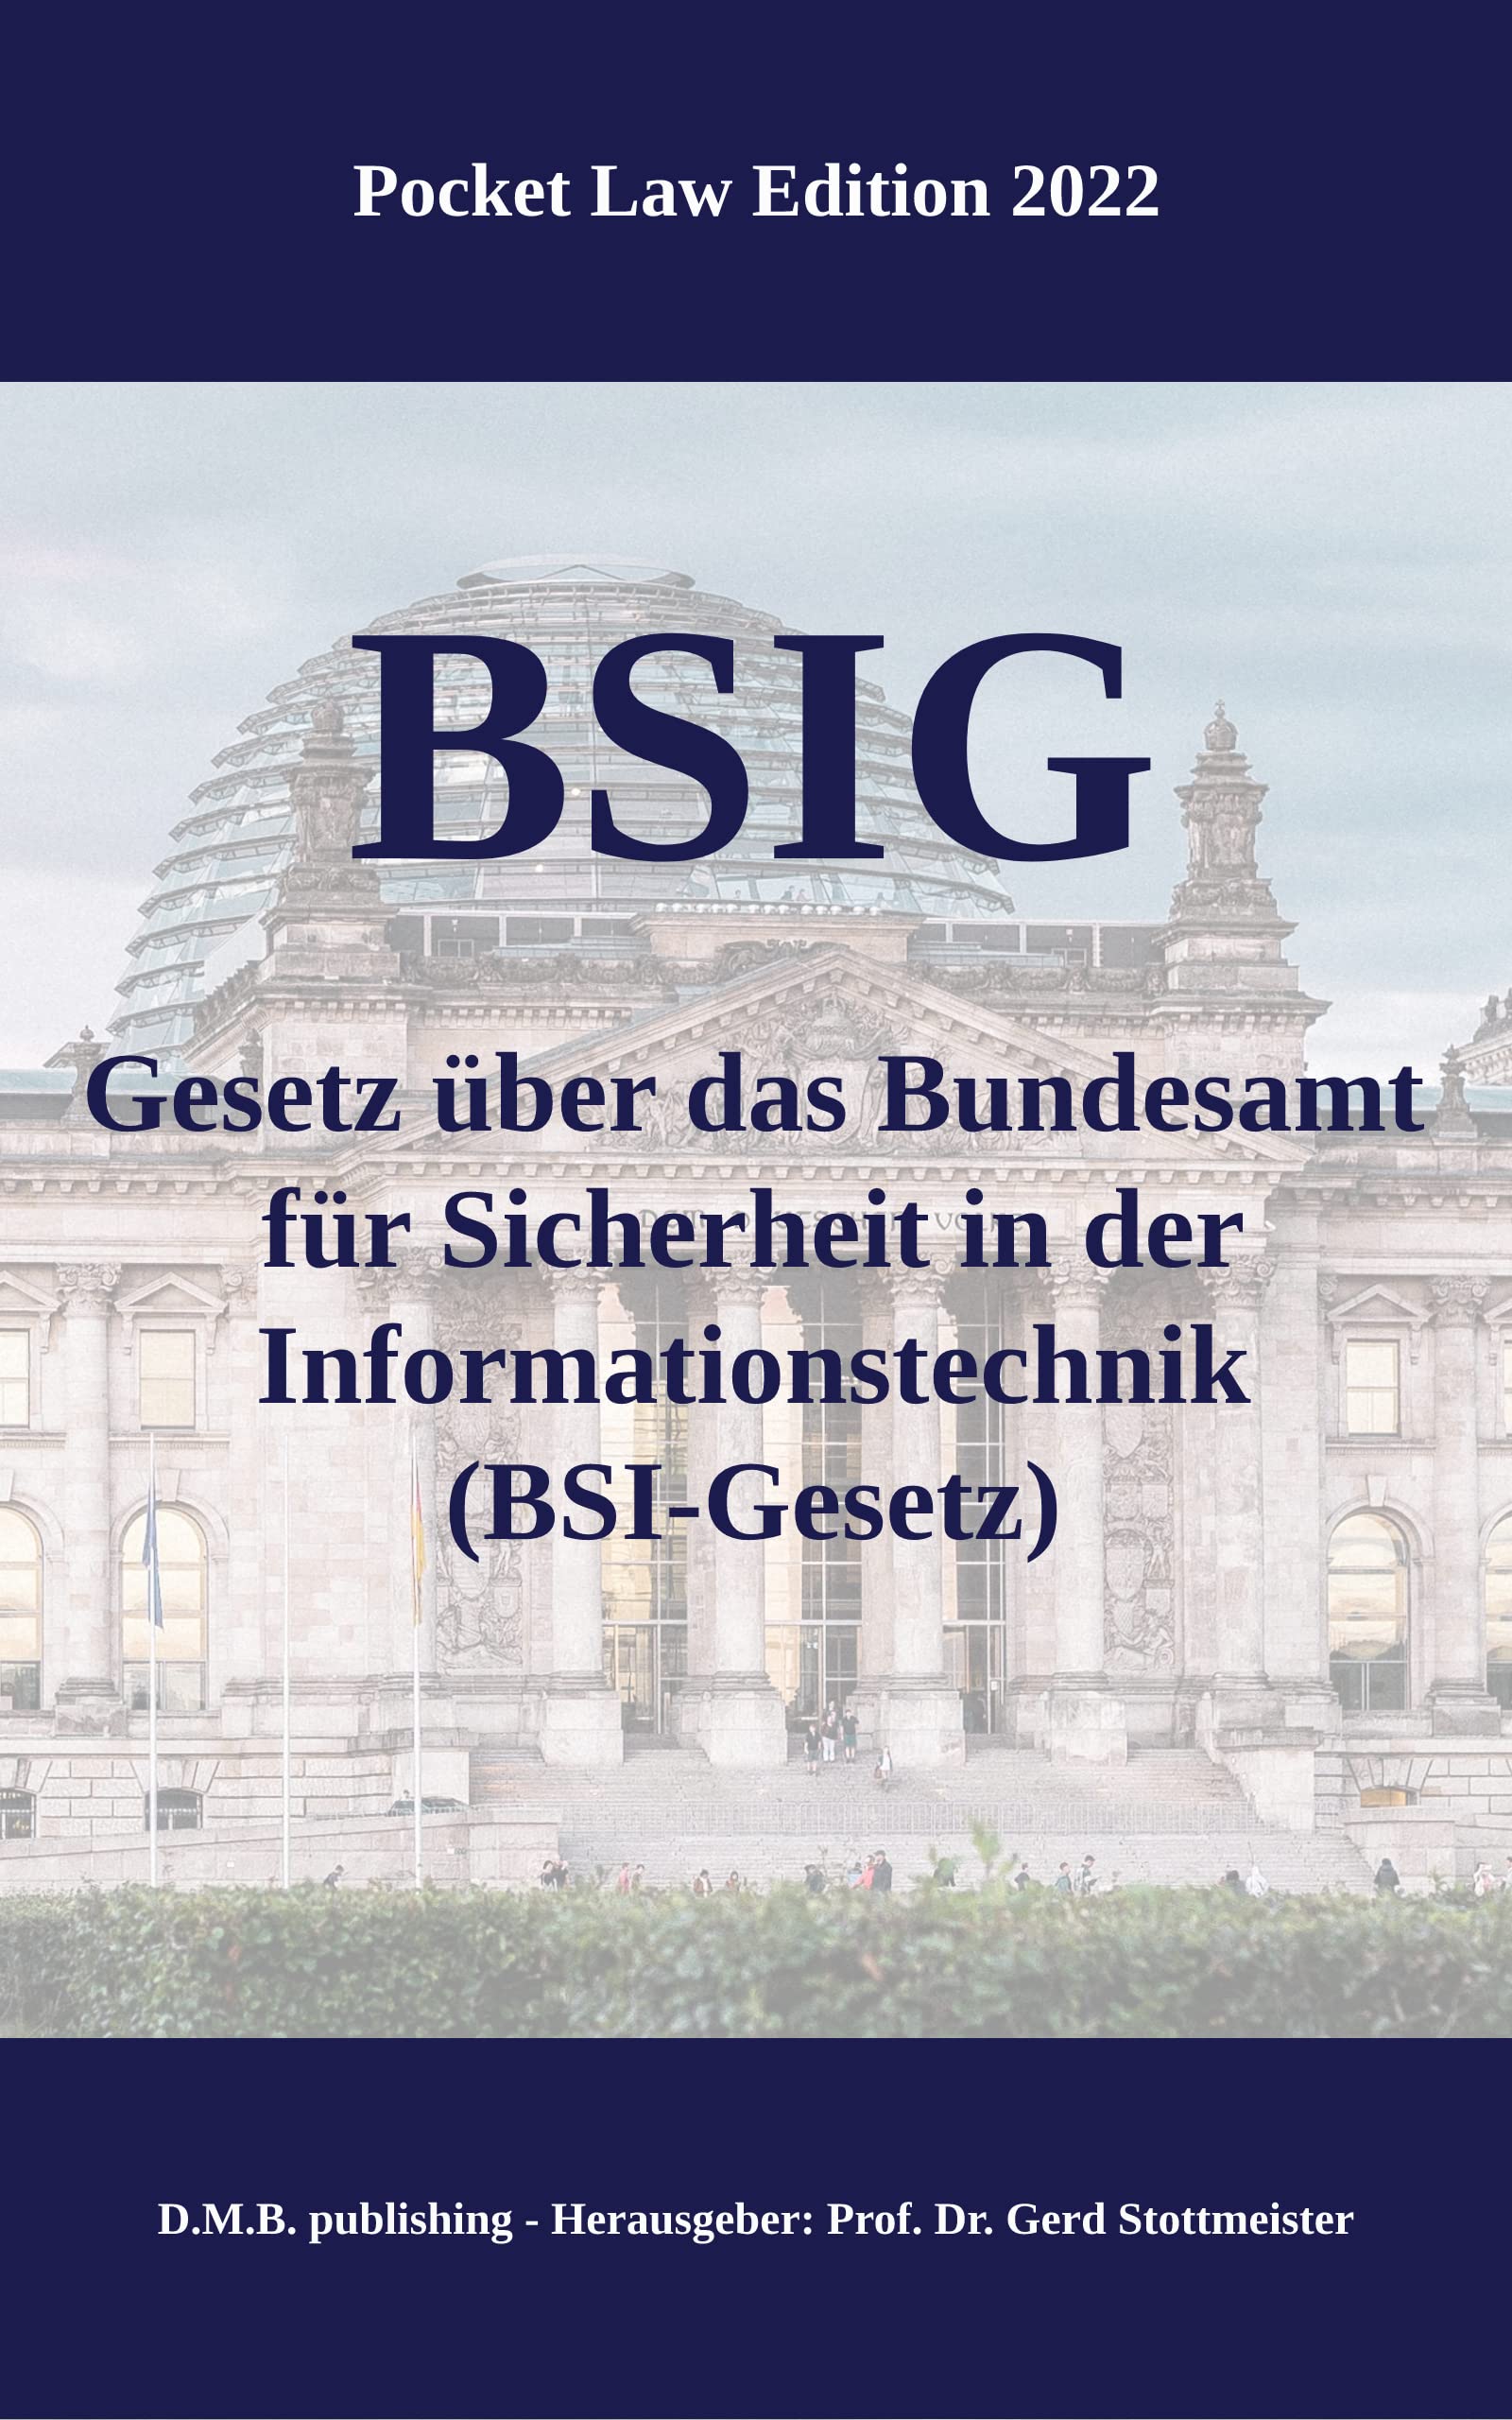 BSIG - Gesetz über das Bundesamt für Sicherheit in der Informationstechnik (BSI-Gesetz): Pocket Law Edition 2022 (German Edition)